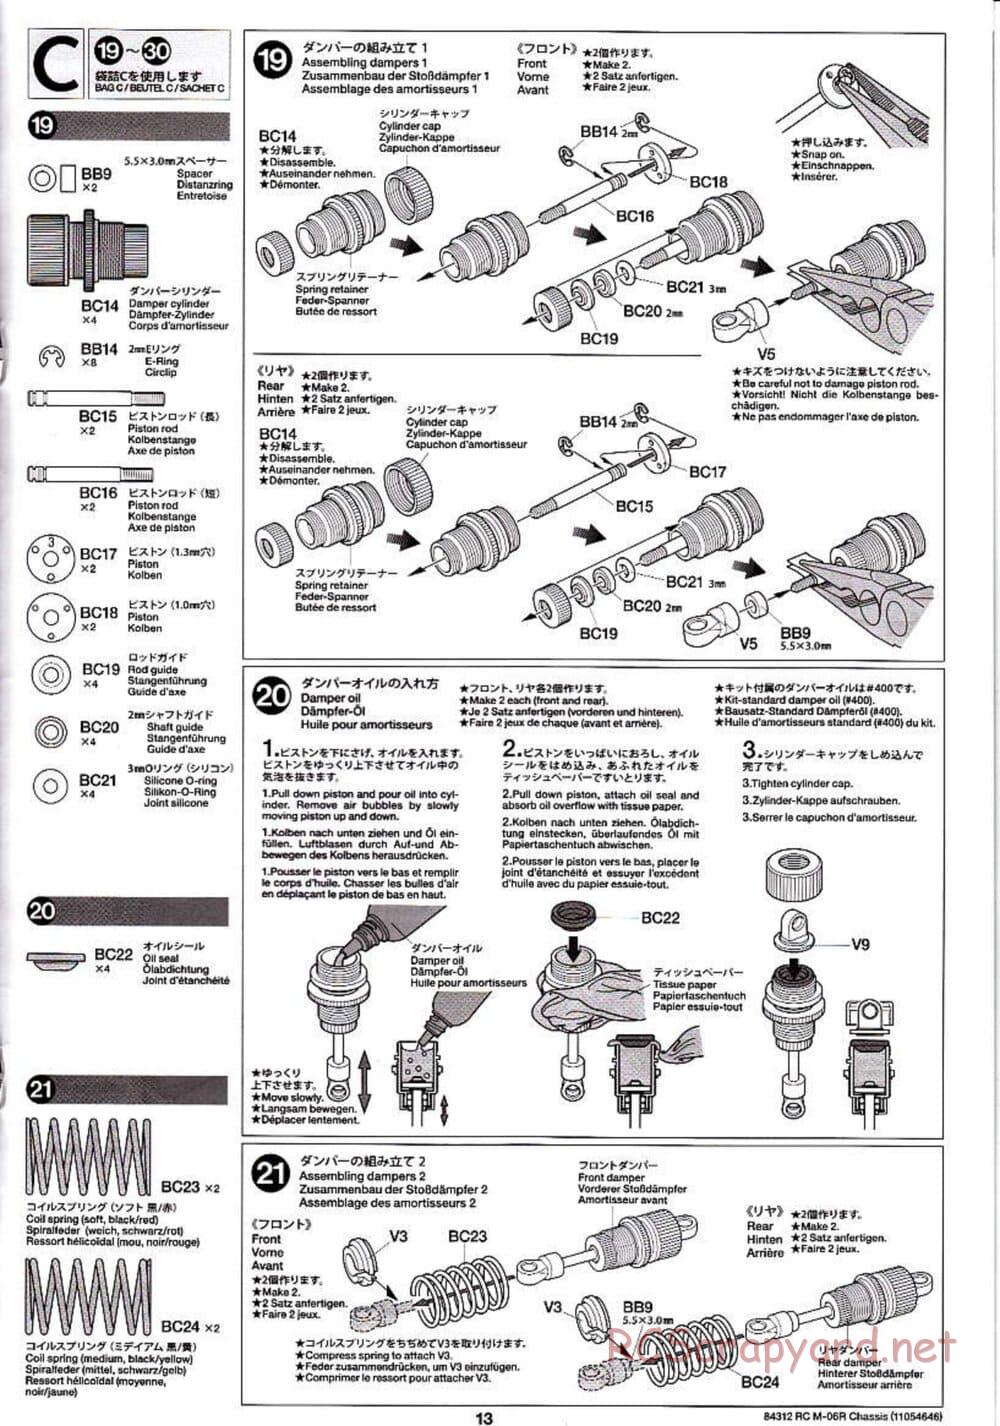 Tamiya - M-06R Chassis - Manual - Page 13